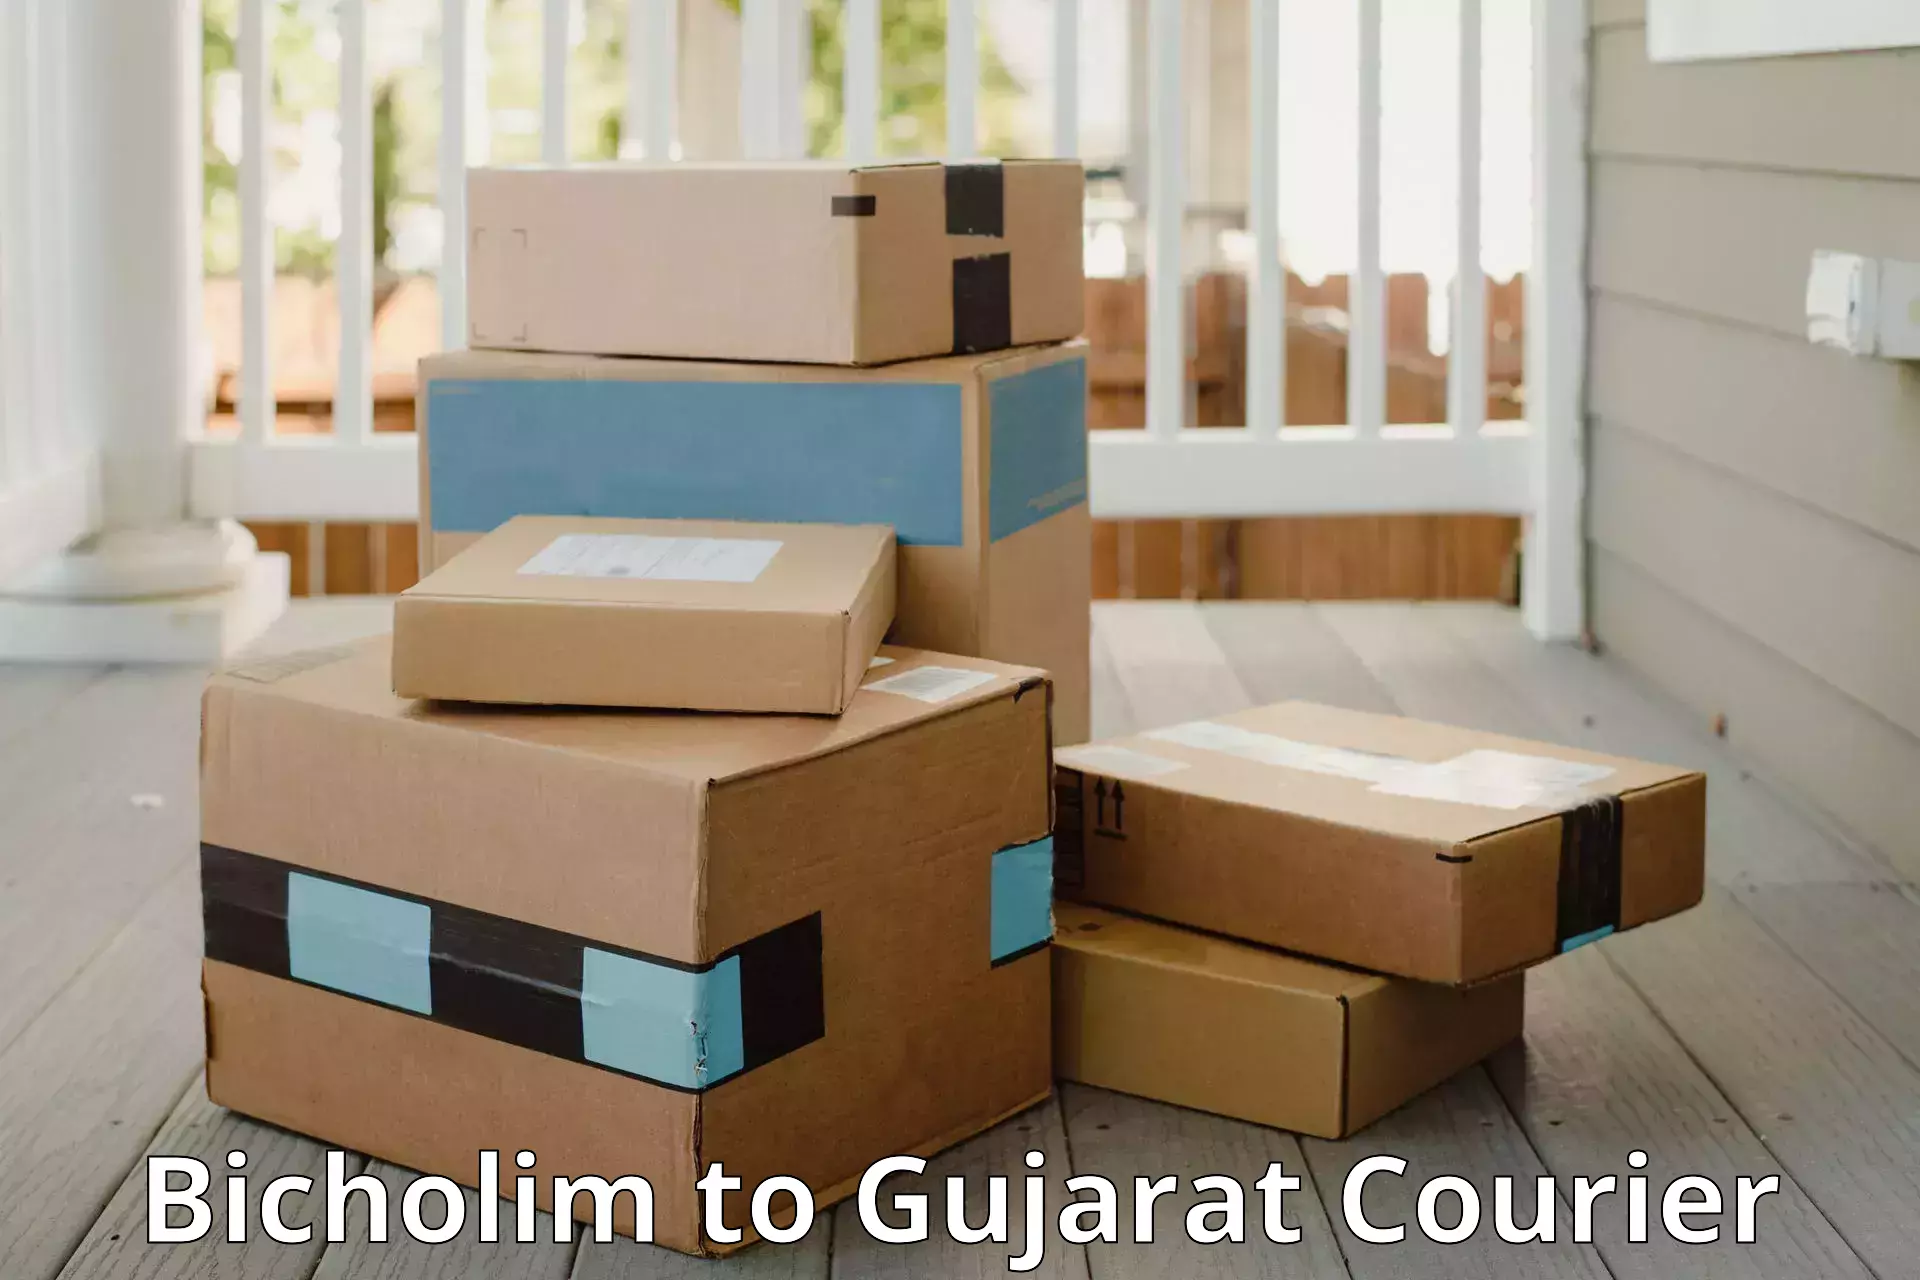 Baggage handling services Bicholim to Gujarat